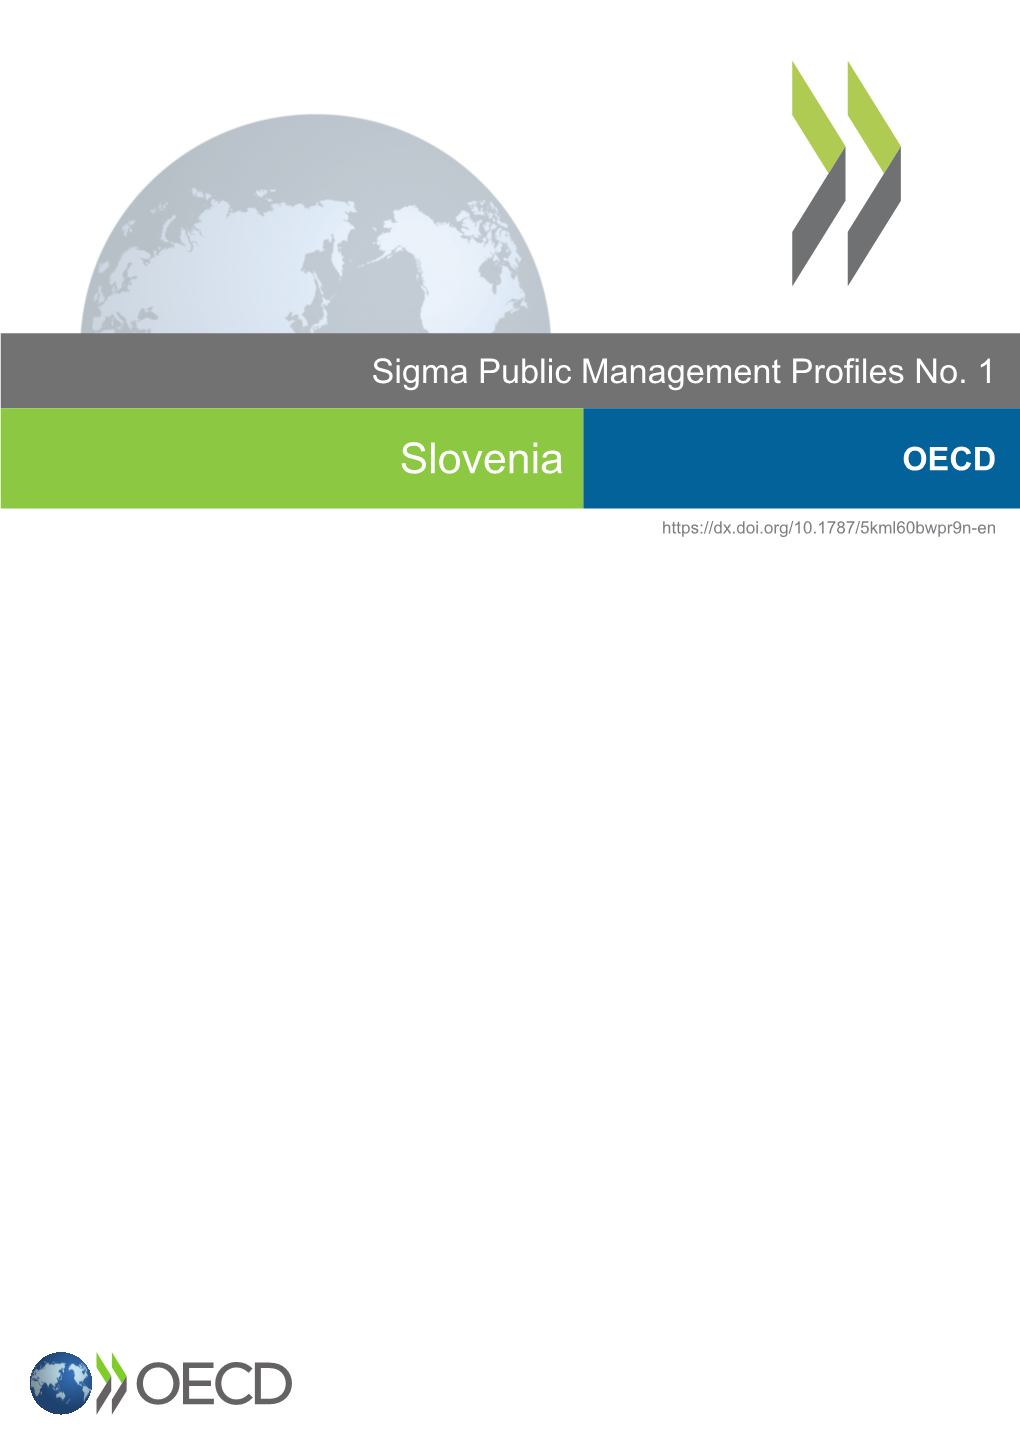 Slovenia OECD